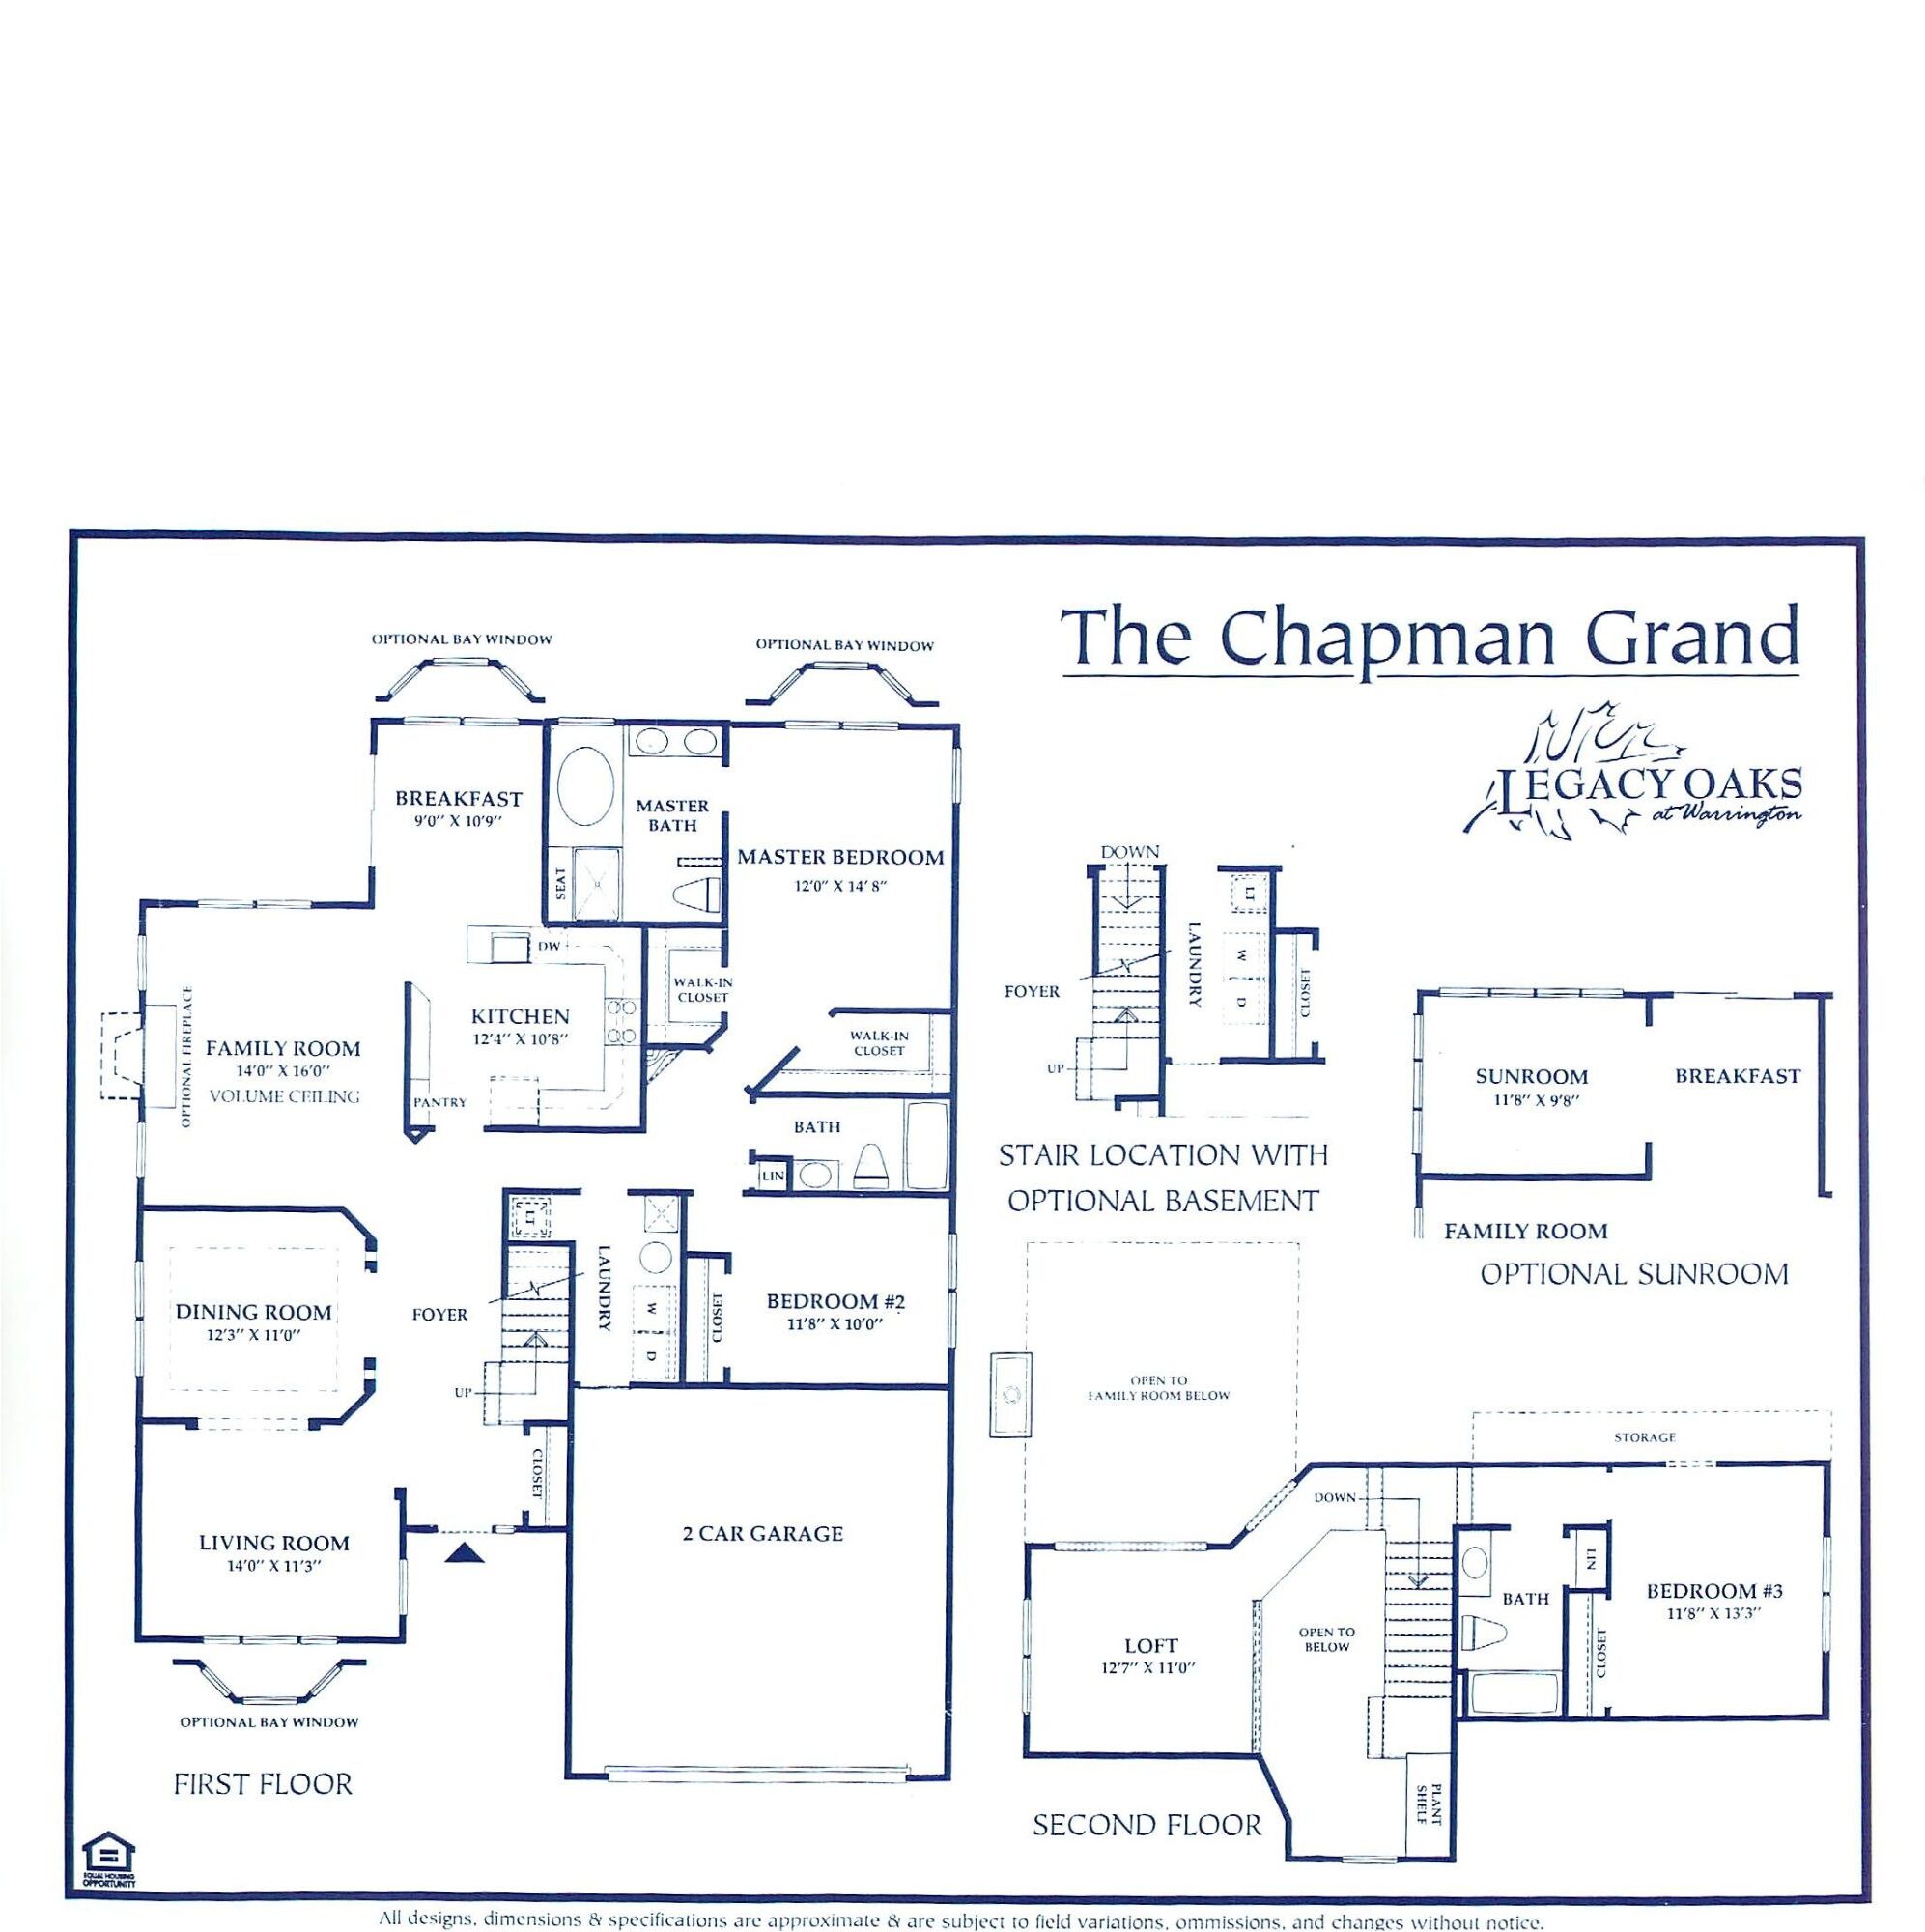 Legacy oaks chapman grand floor plan2A